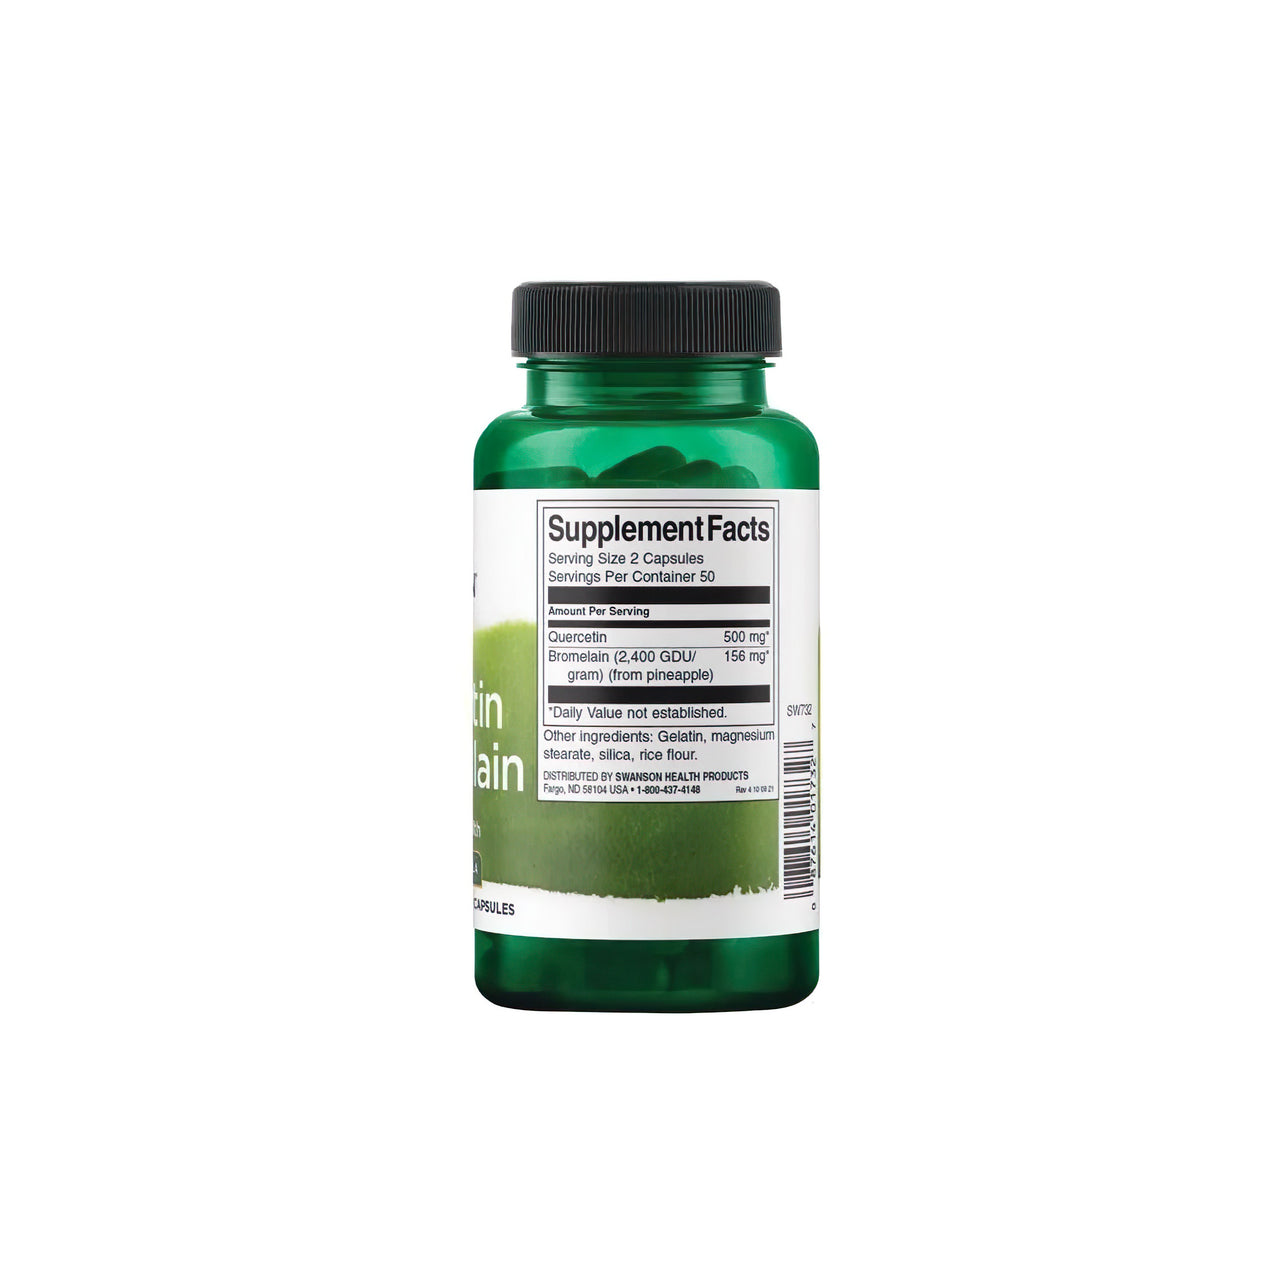 Une bouteille de Swanson's Quercetin with Bromelain 100 caps, un nutriment essentiel pour le système immunitaire, sur un fond blanc.